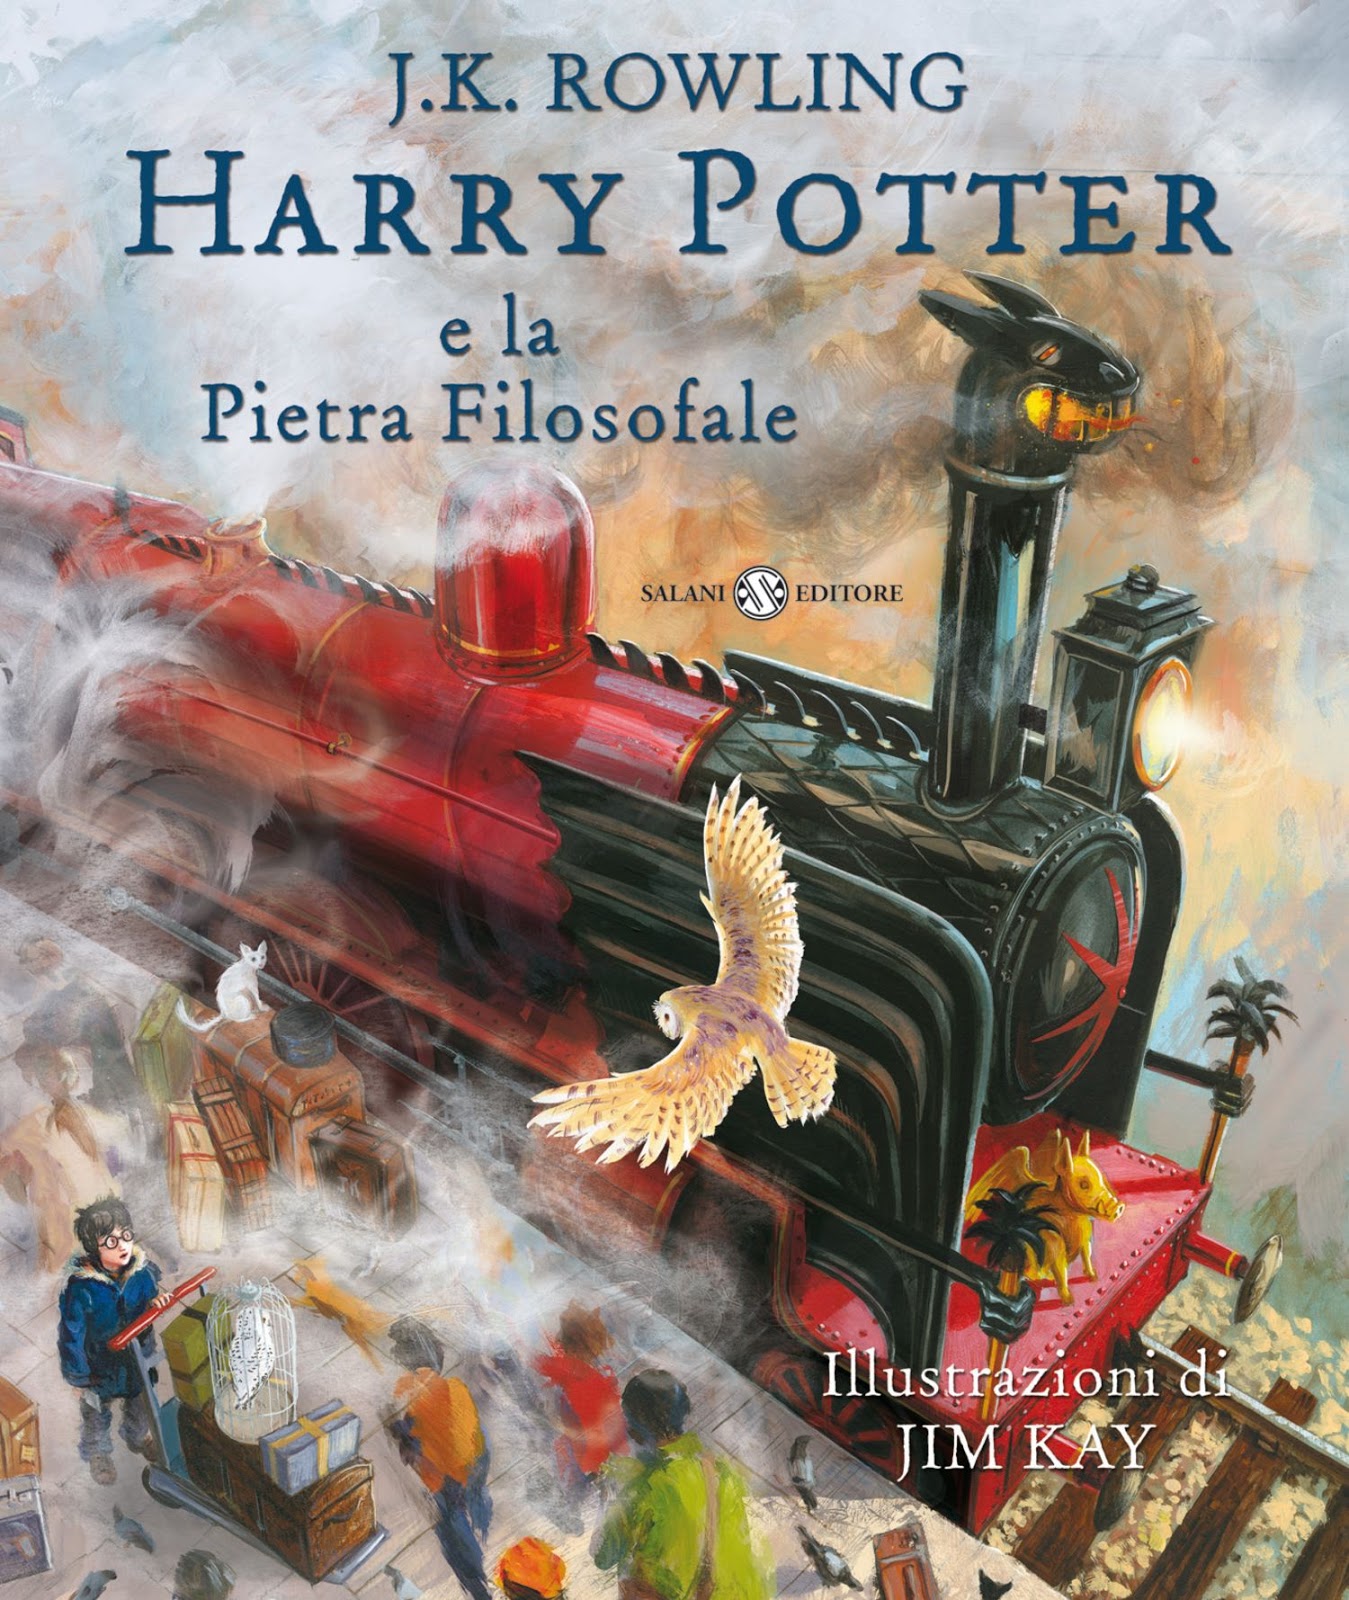 [ FANTASY ] Harry Potter e La Pietra Filosofale Edizione Illustrata a Colori Leggere In